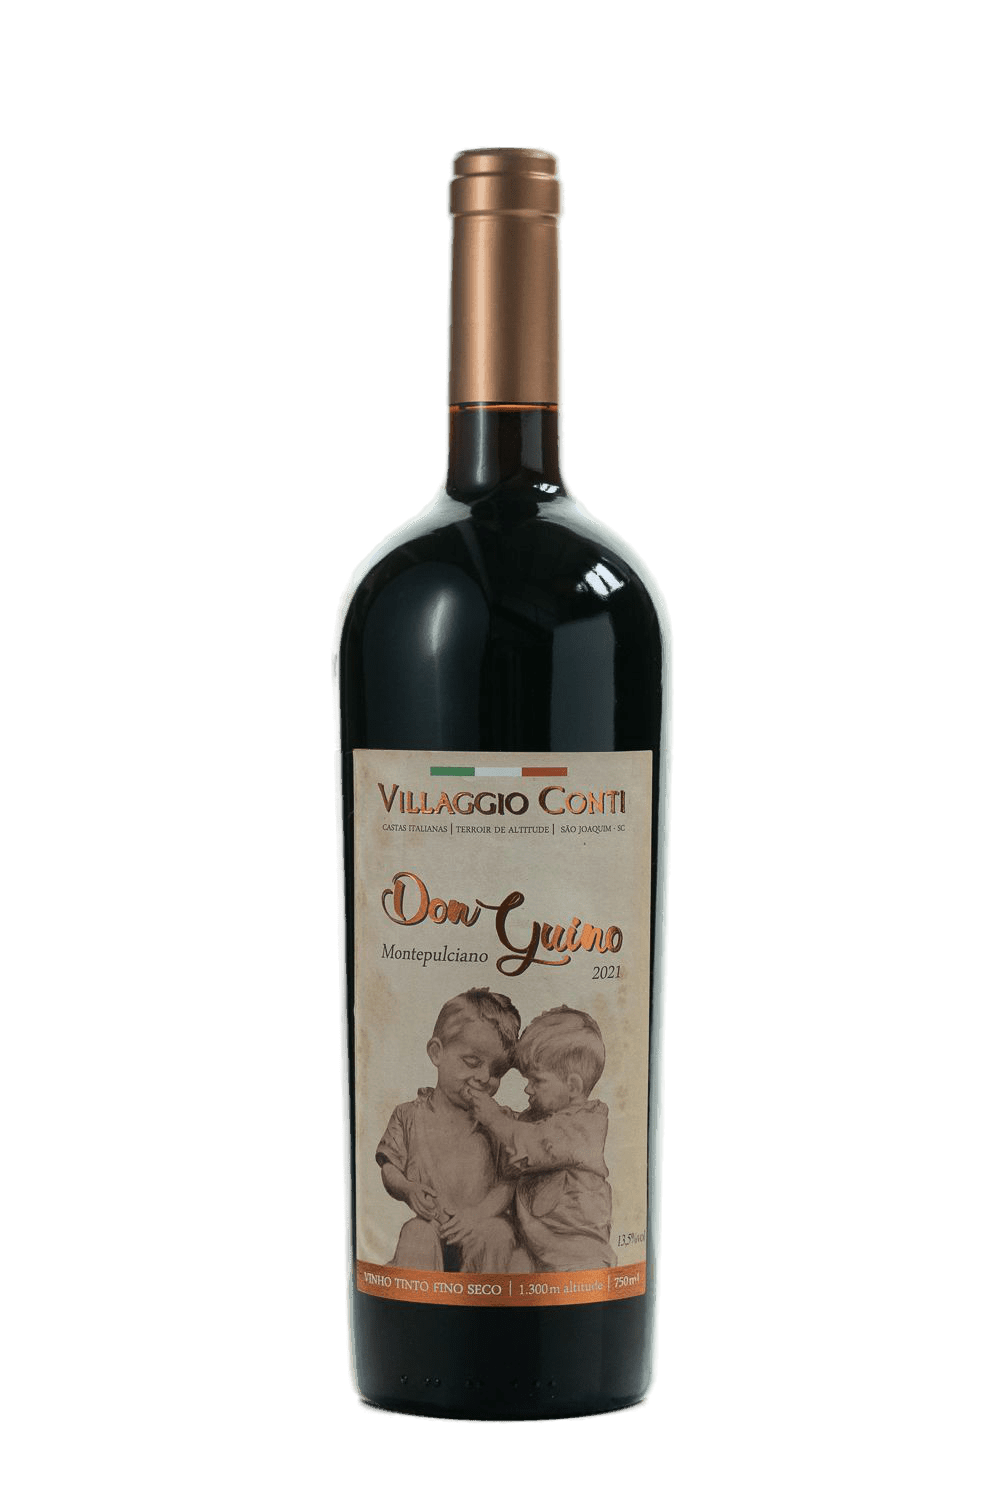 Villaggio Conti - Don Guino - The Blend Wines